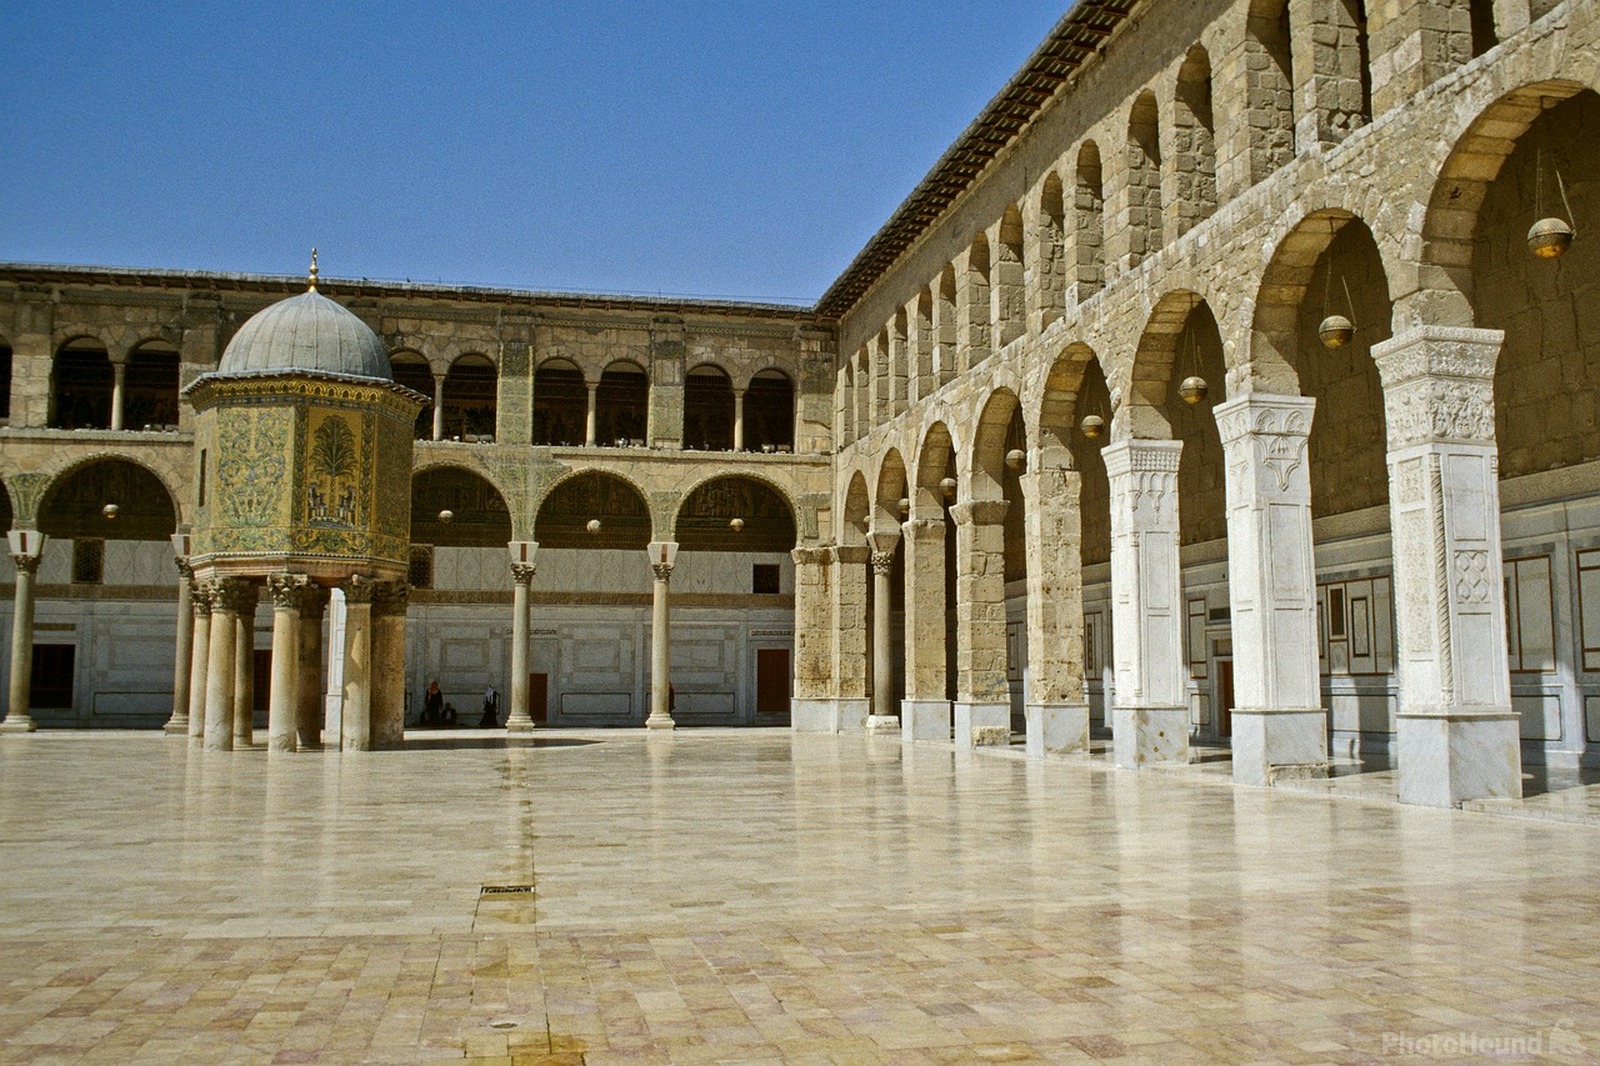 Image of Umayyad Mosque by Team PhotoHound